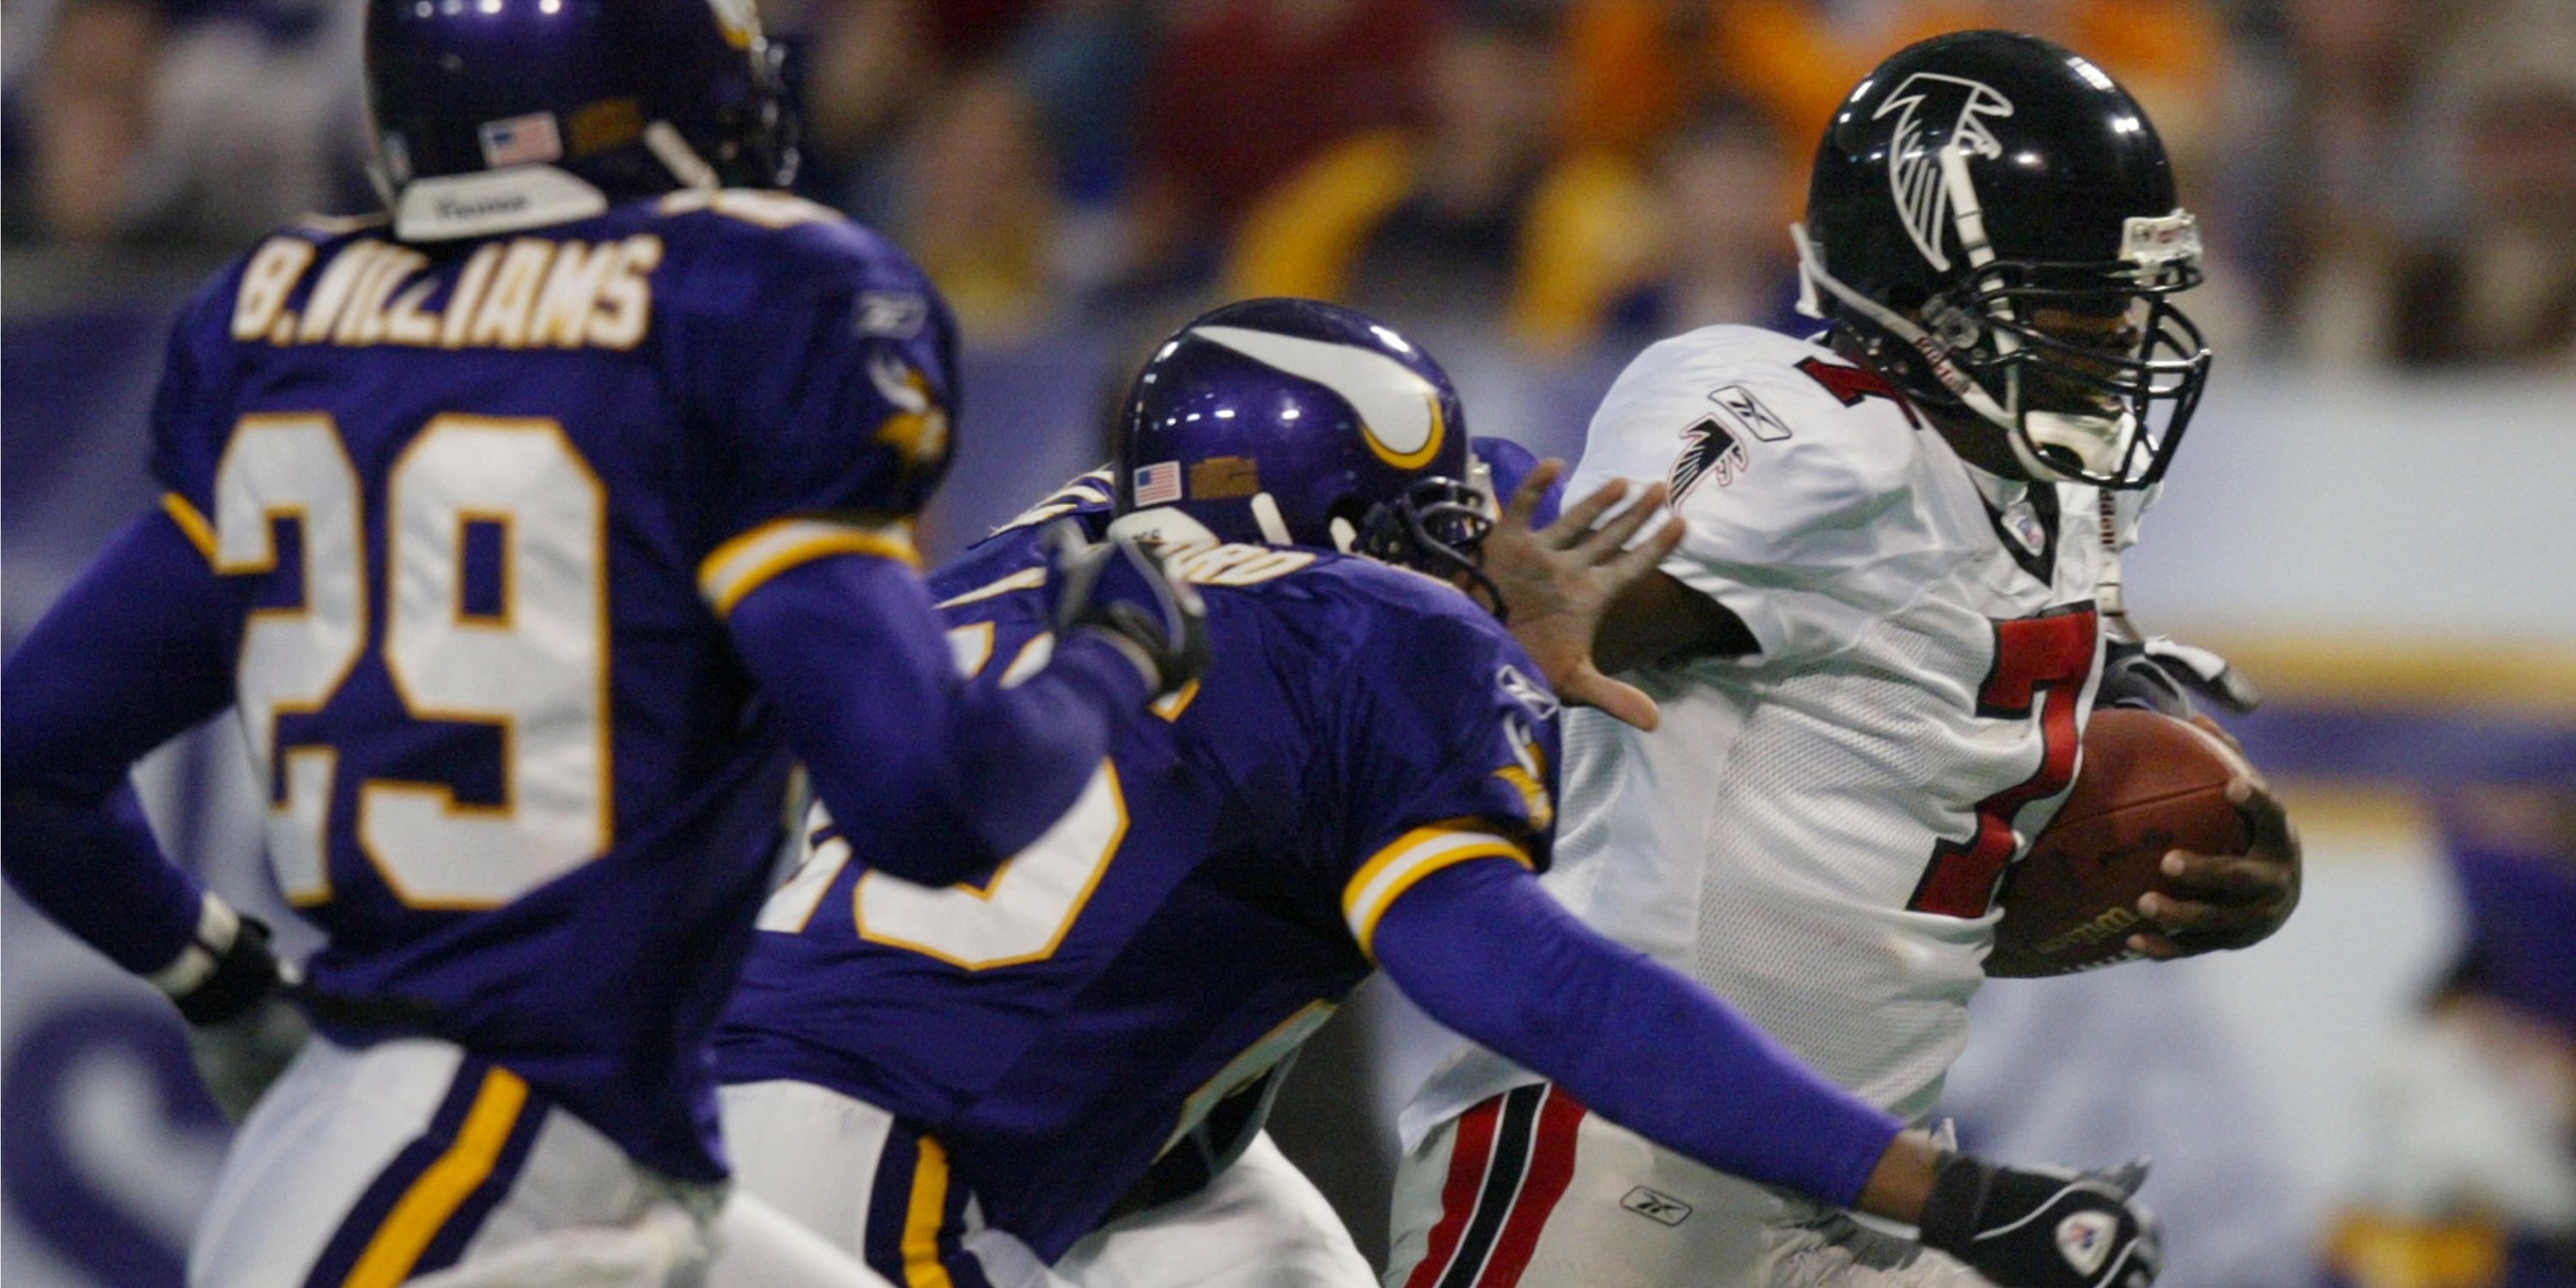 Michael Vick Atlanta Falcons quarterback